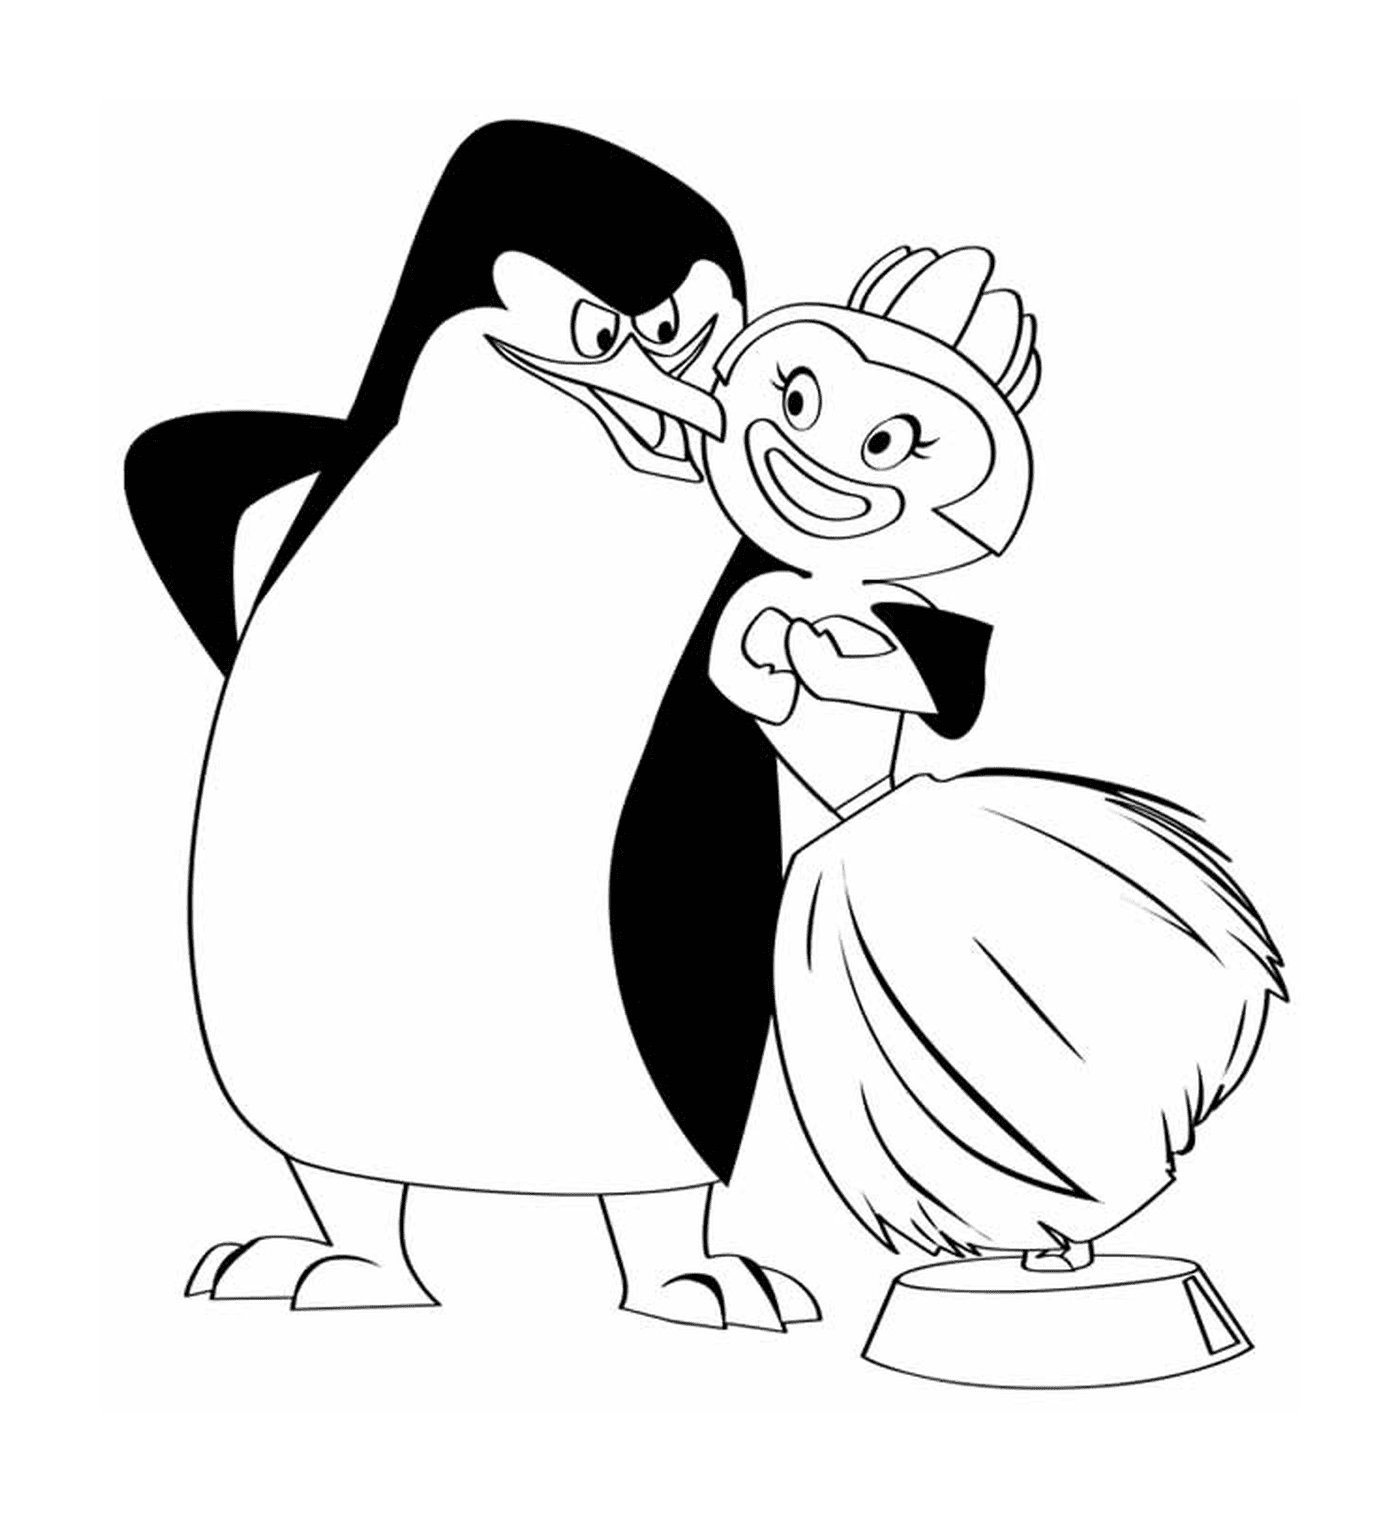  Pinguini Madagascar disegno 